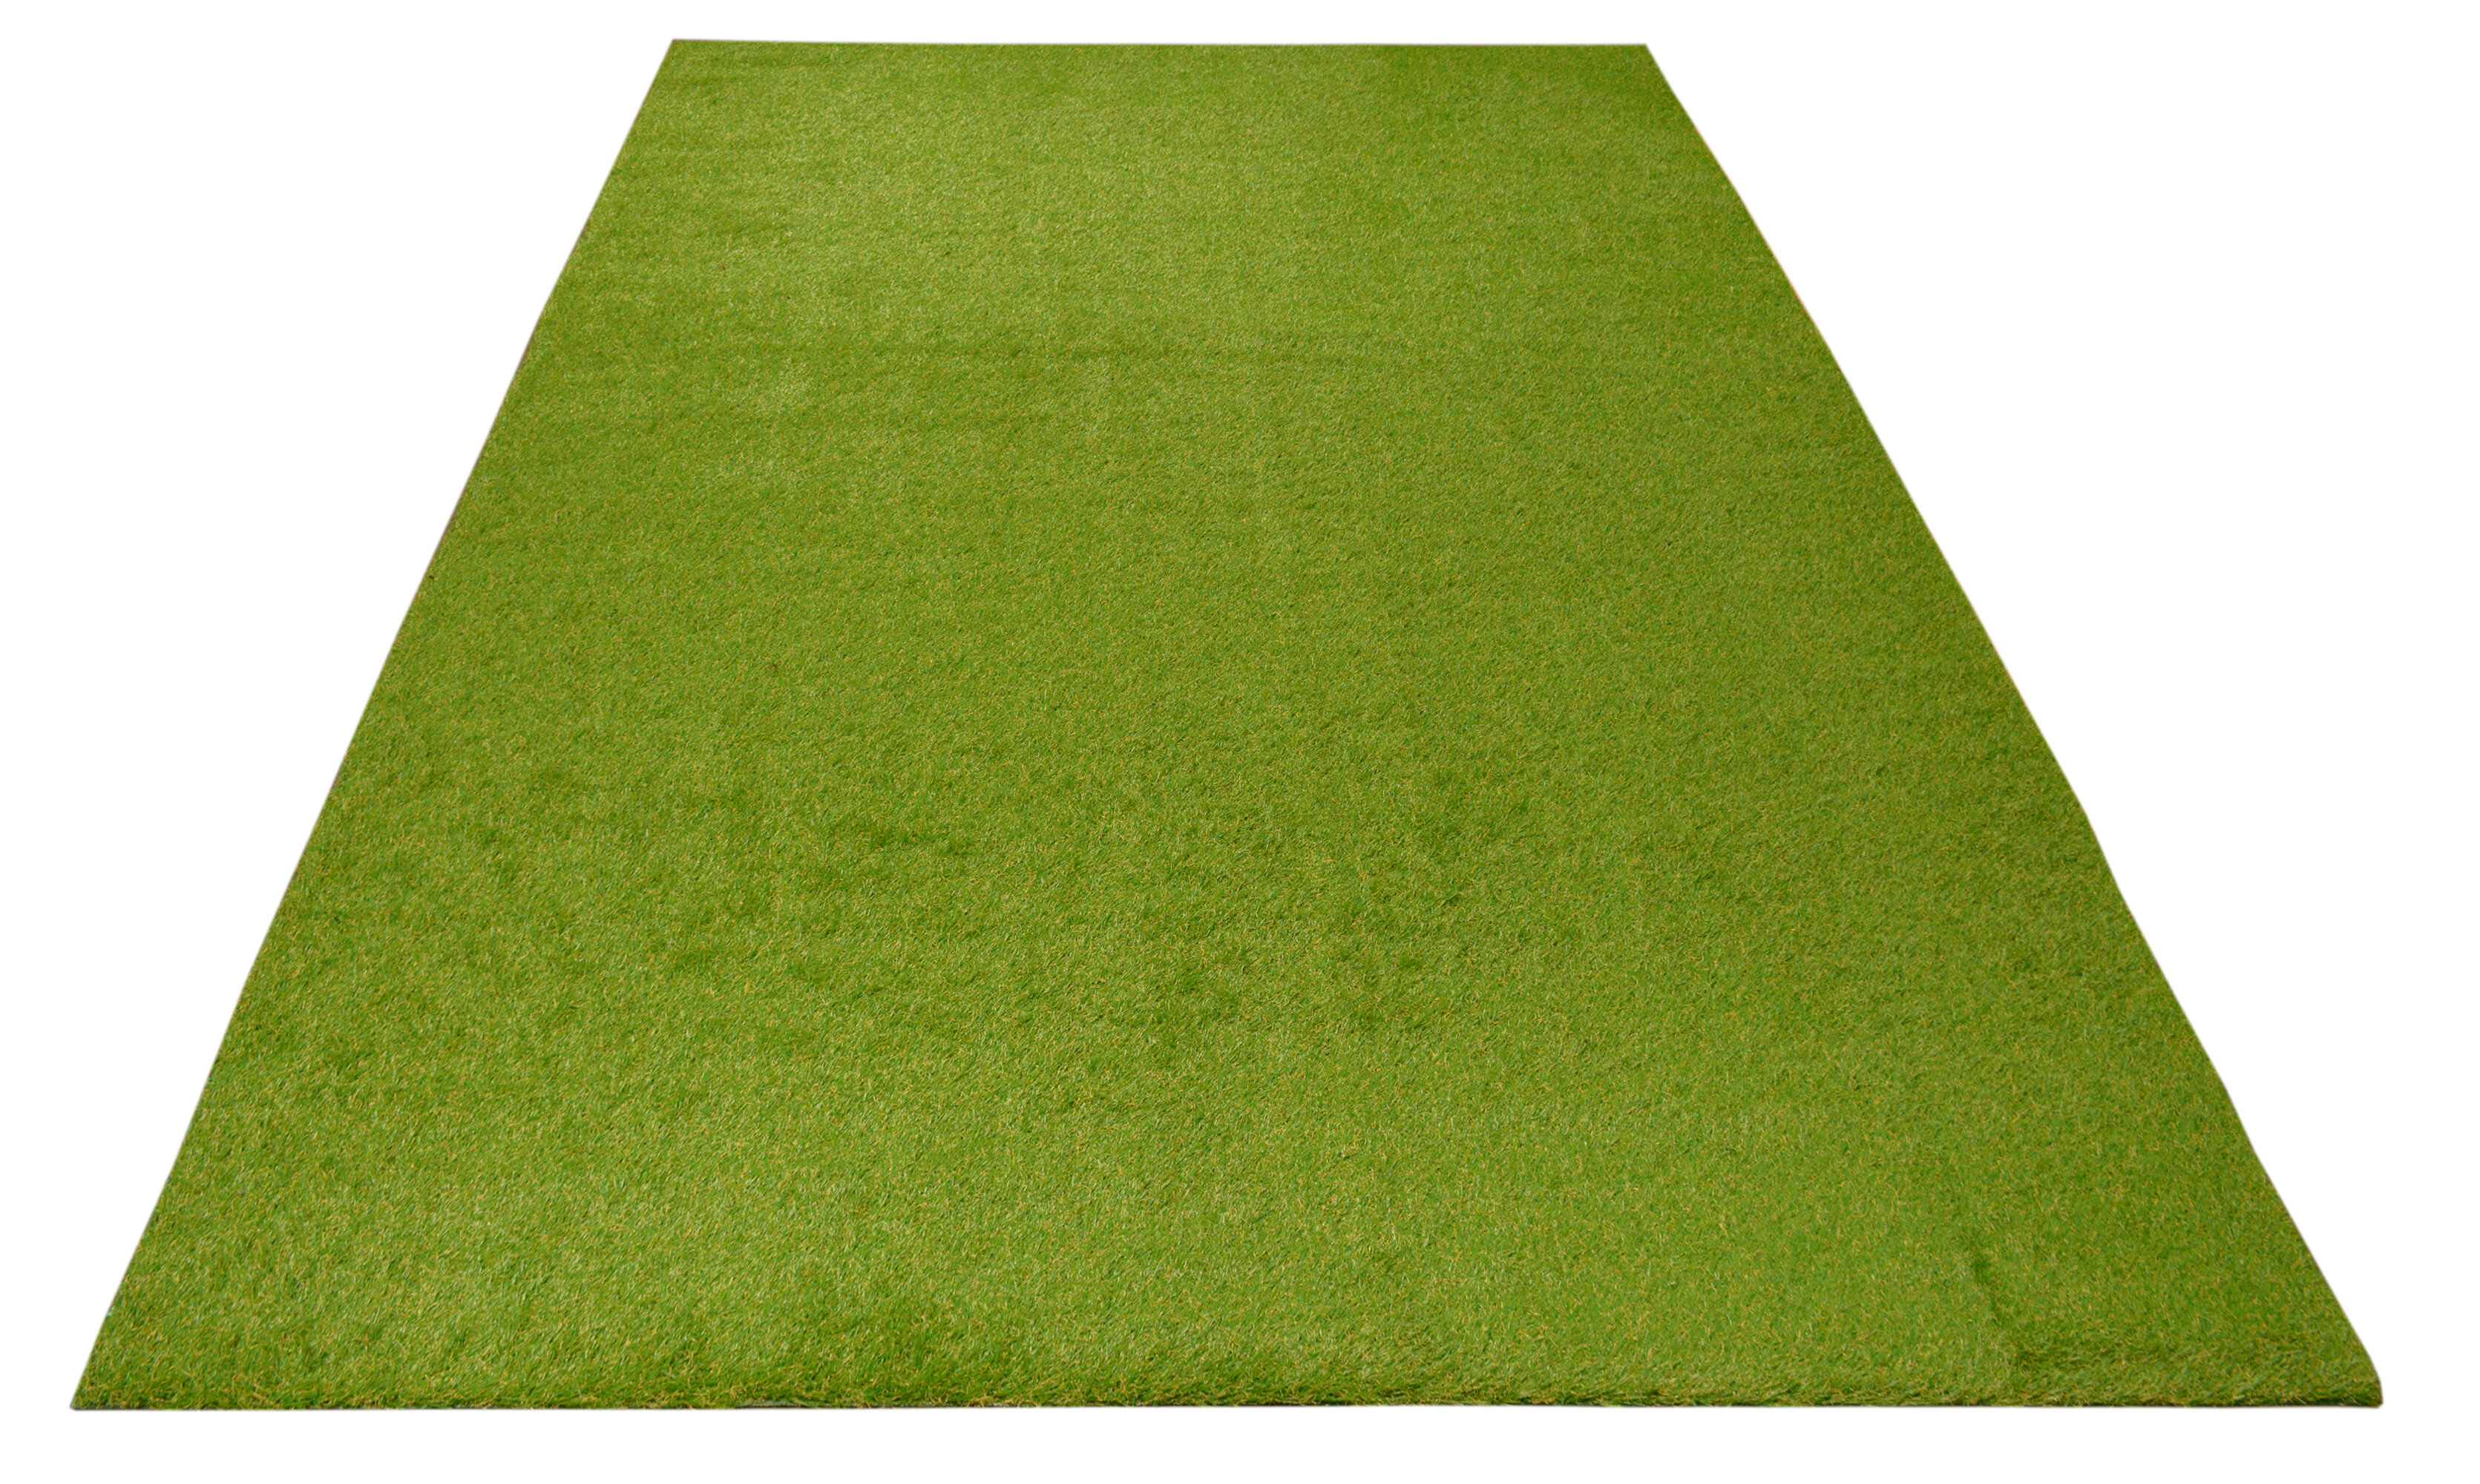 Keep Off Rug, Keep Off Wet Grass, Keep Off Wet Grass Rug, Non-Slip Rug,  C969 (63”x83”)=160x210cm